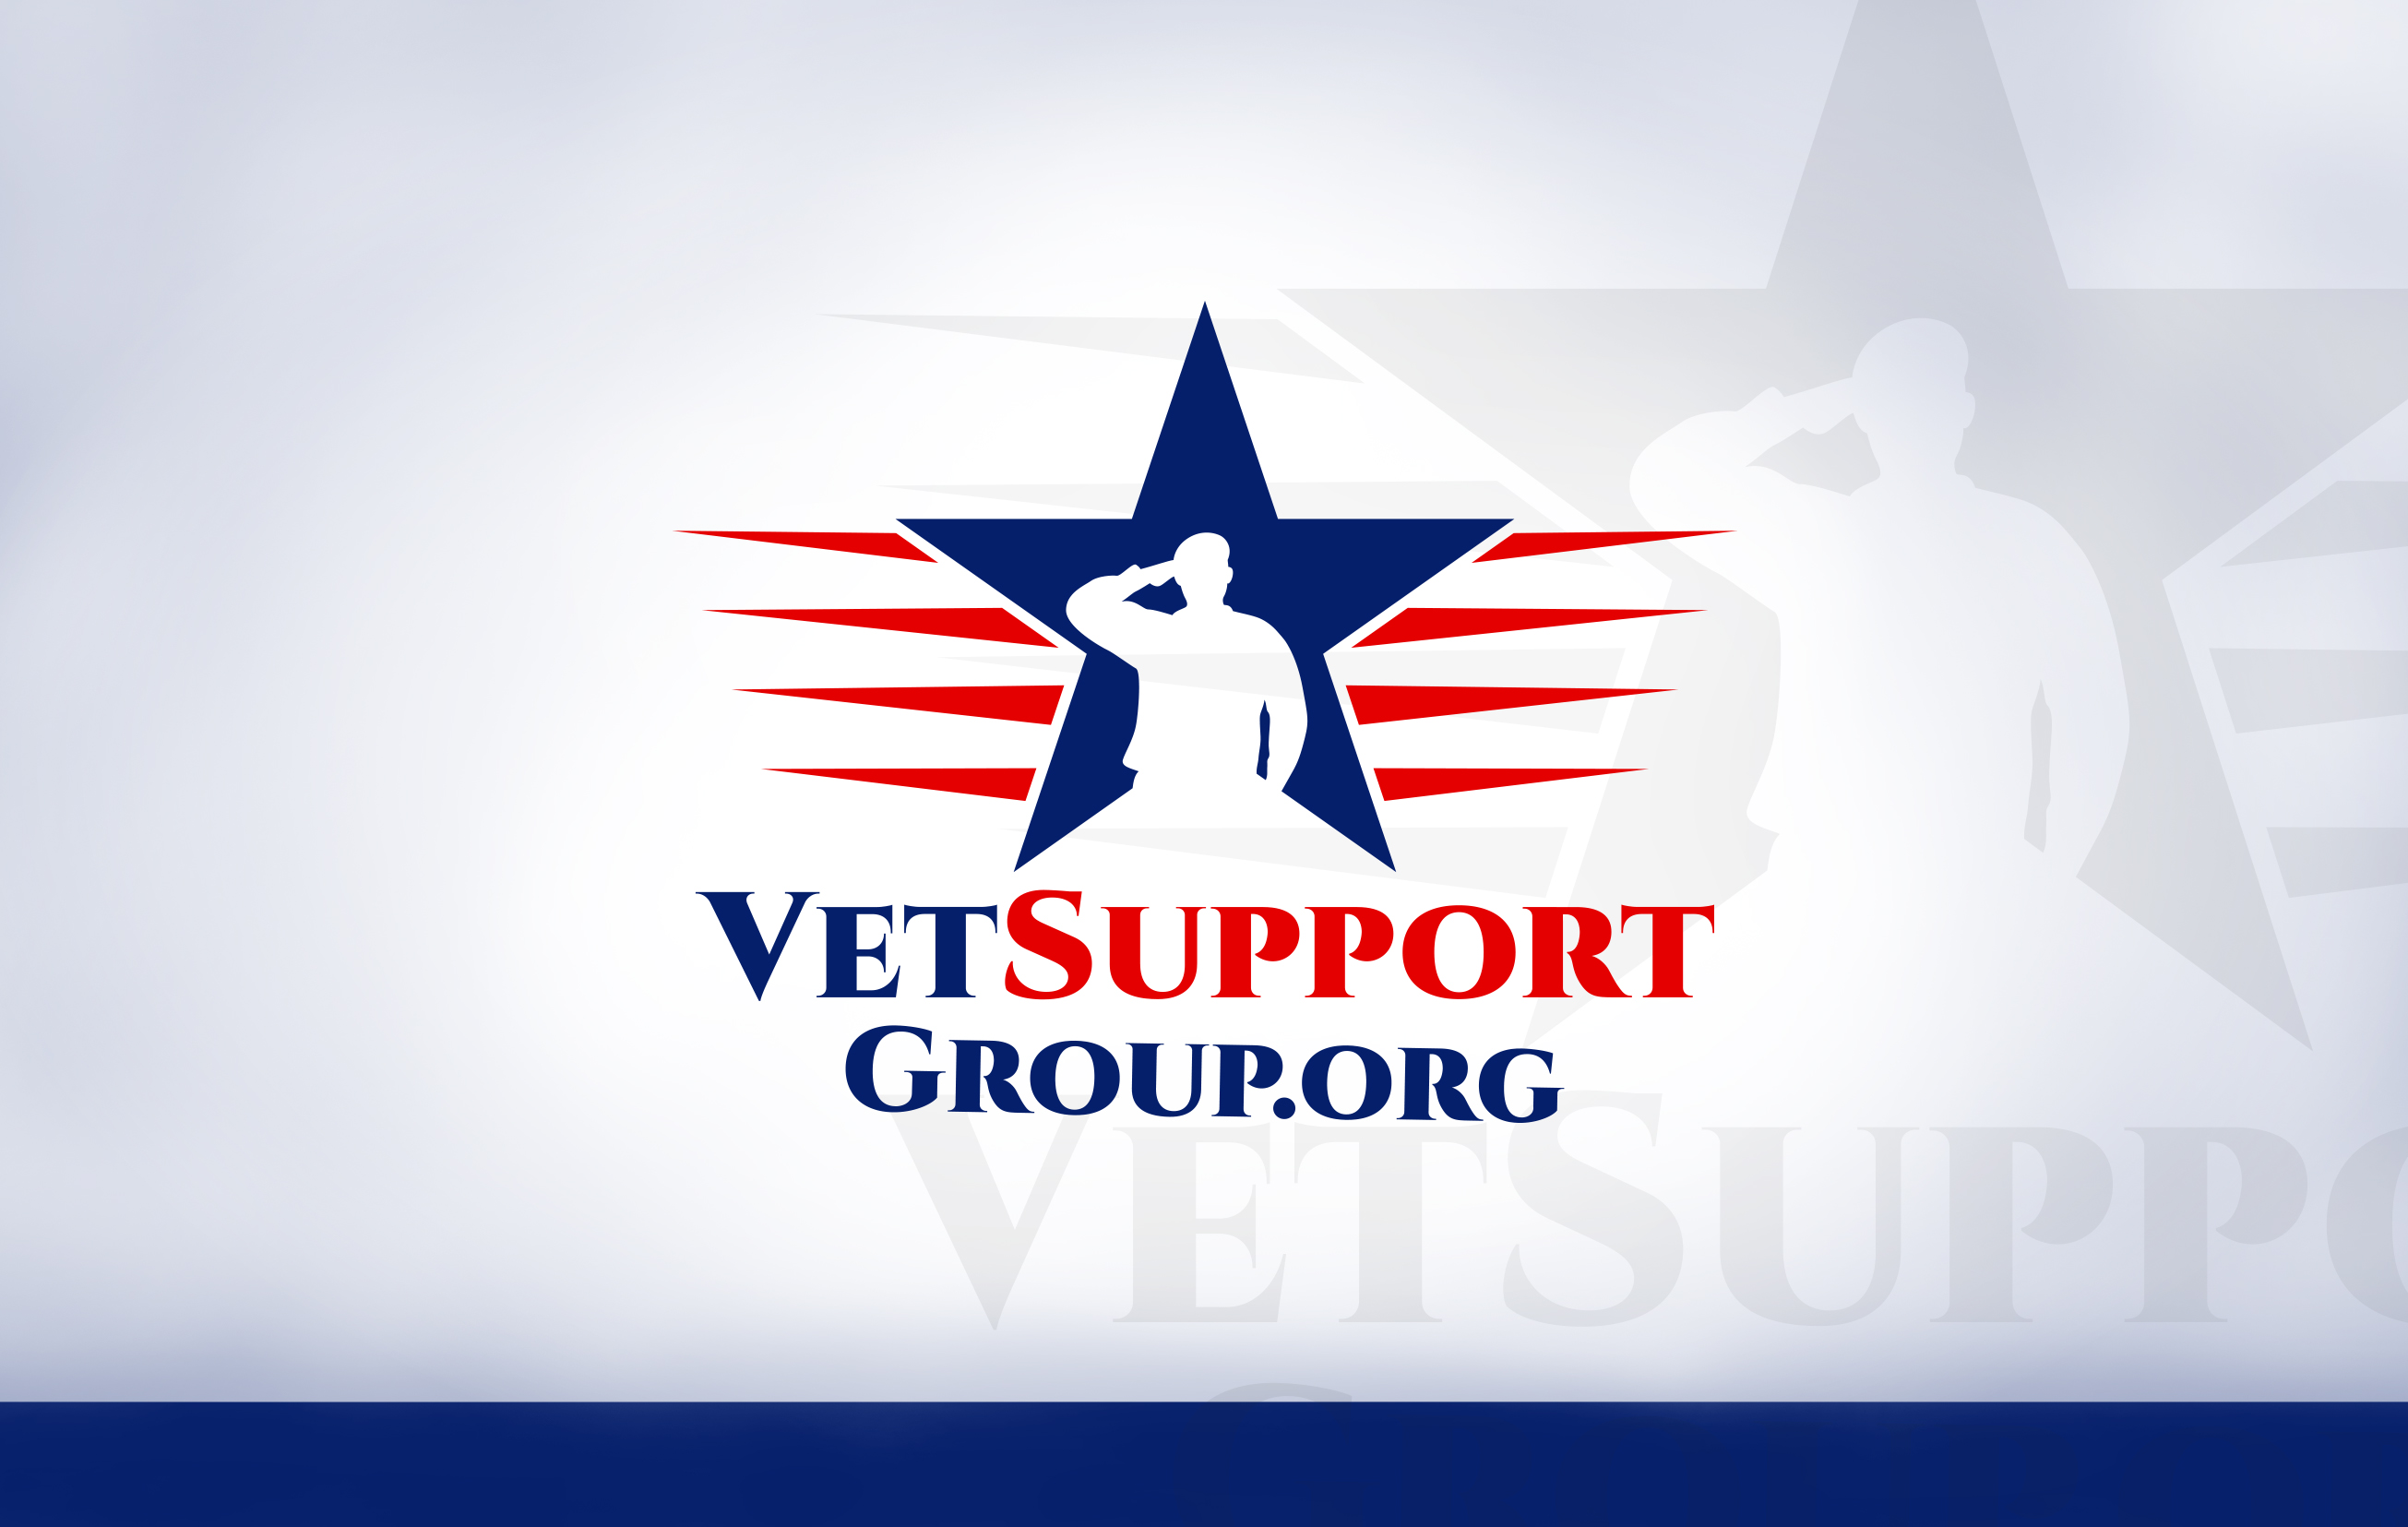 Vet Support Group Design #5